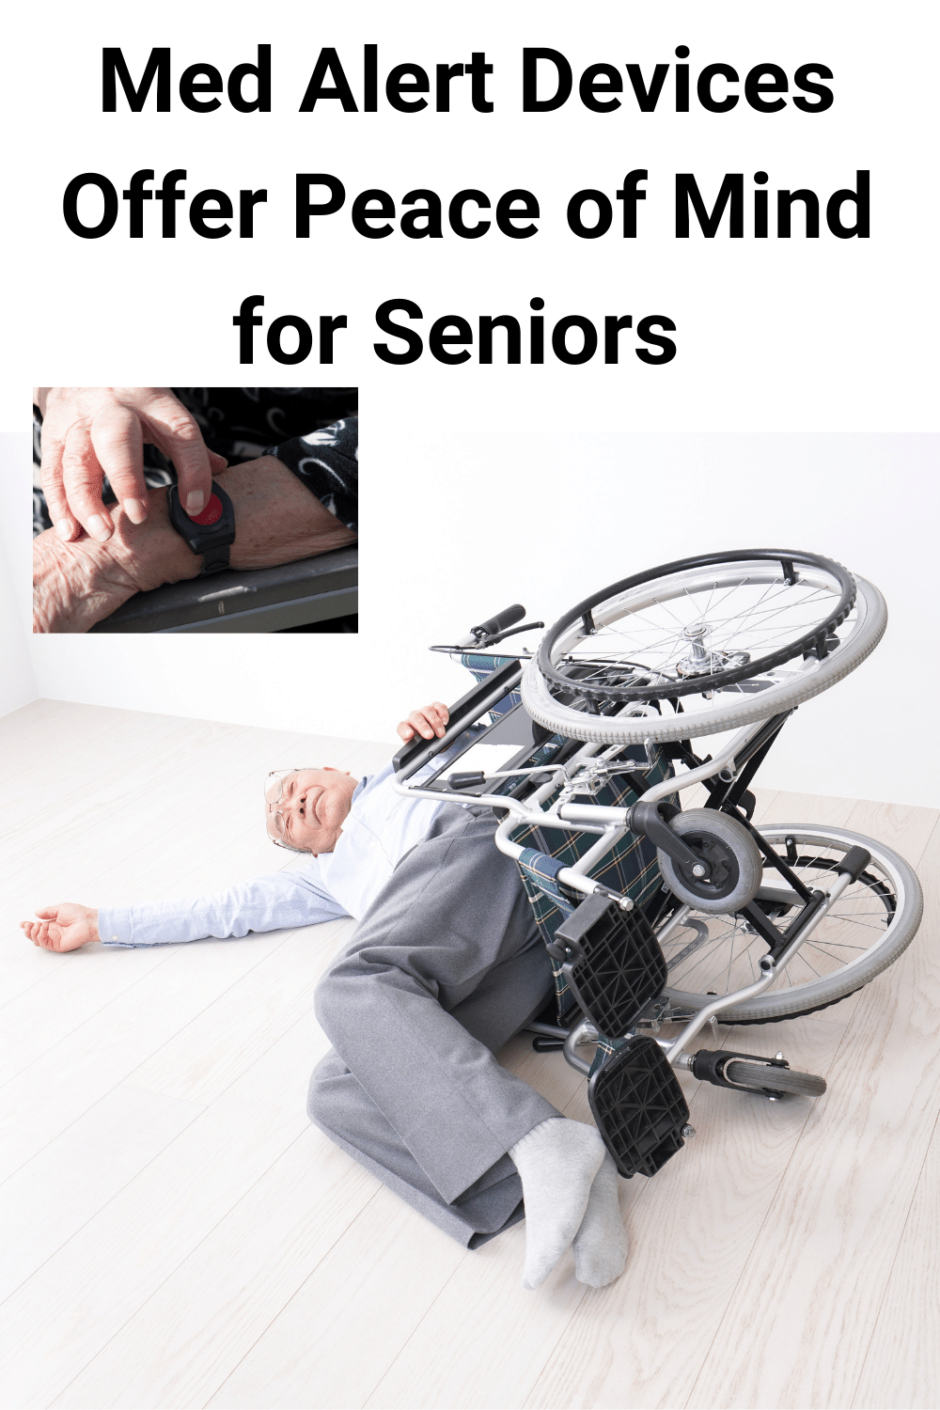 Med Alert Device - Safety for Seniors